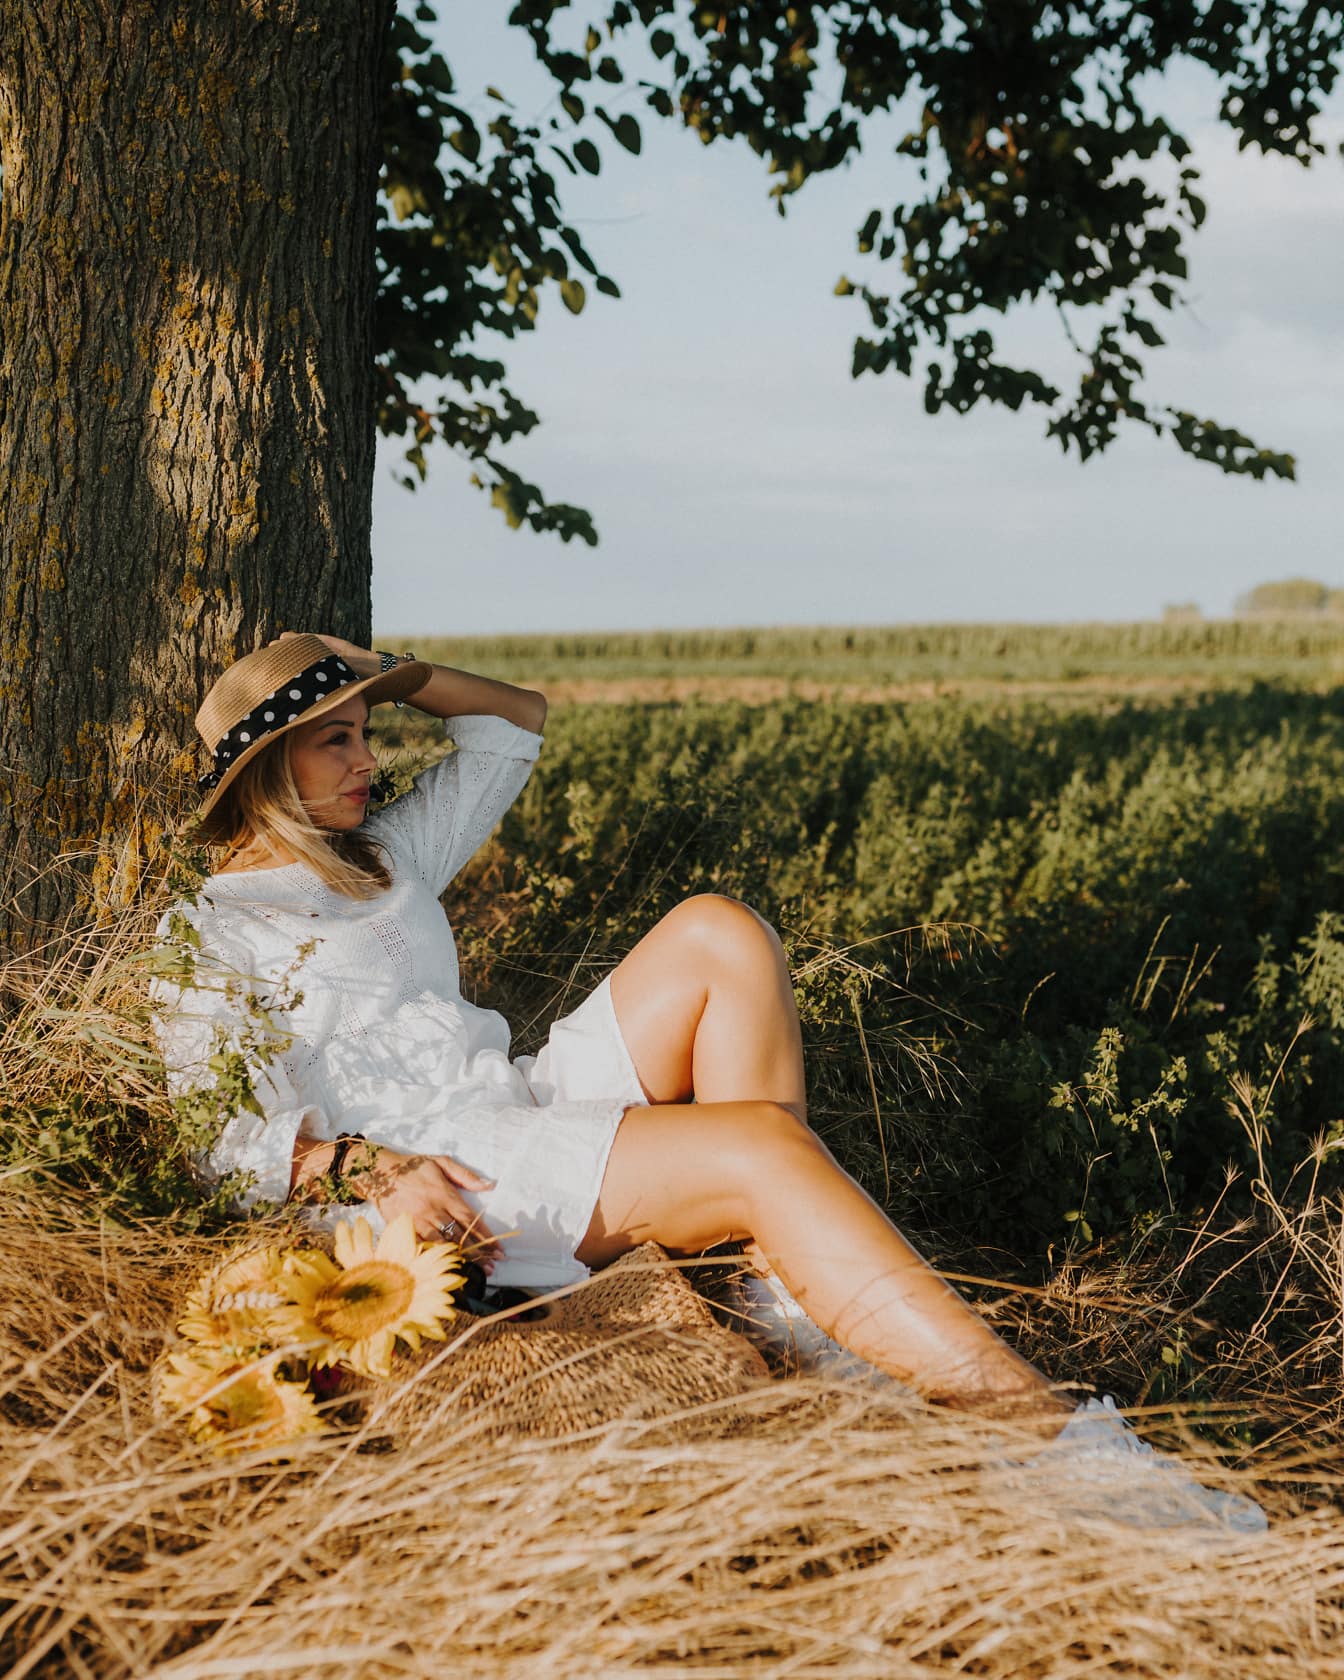 สาวชนบทในชุดสีขาวและหมวกฟางนั่งอยู่ในทุ่งนาใต้ต้นไม้